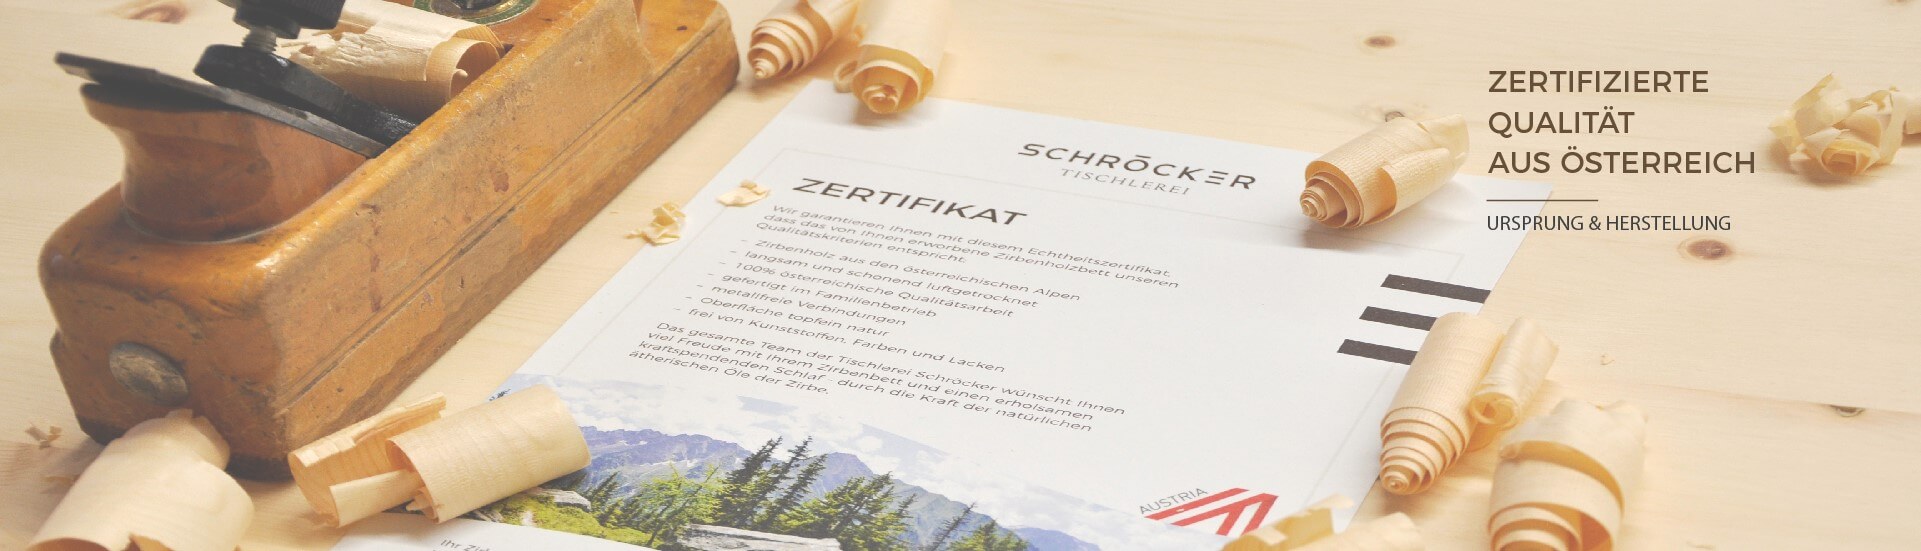 Schlafsysteme mit Zirbenholz - garantierte Qualität aus Österreich Das Zirbenbett